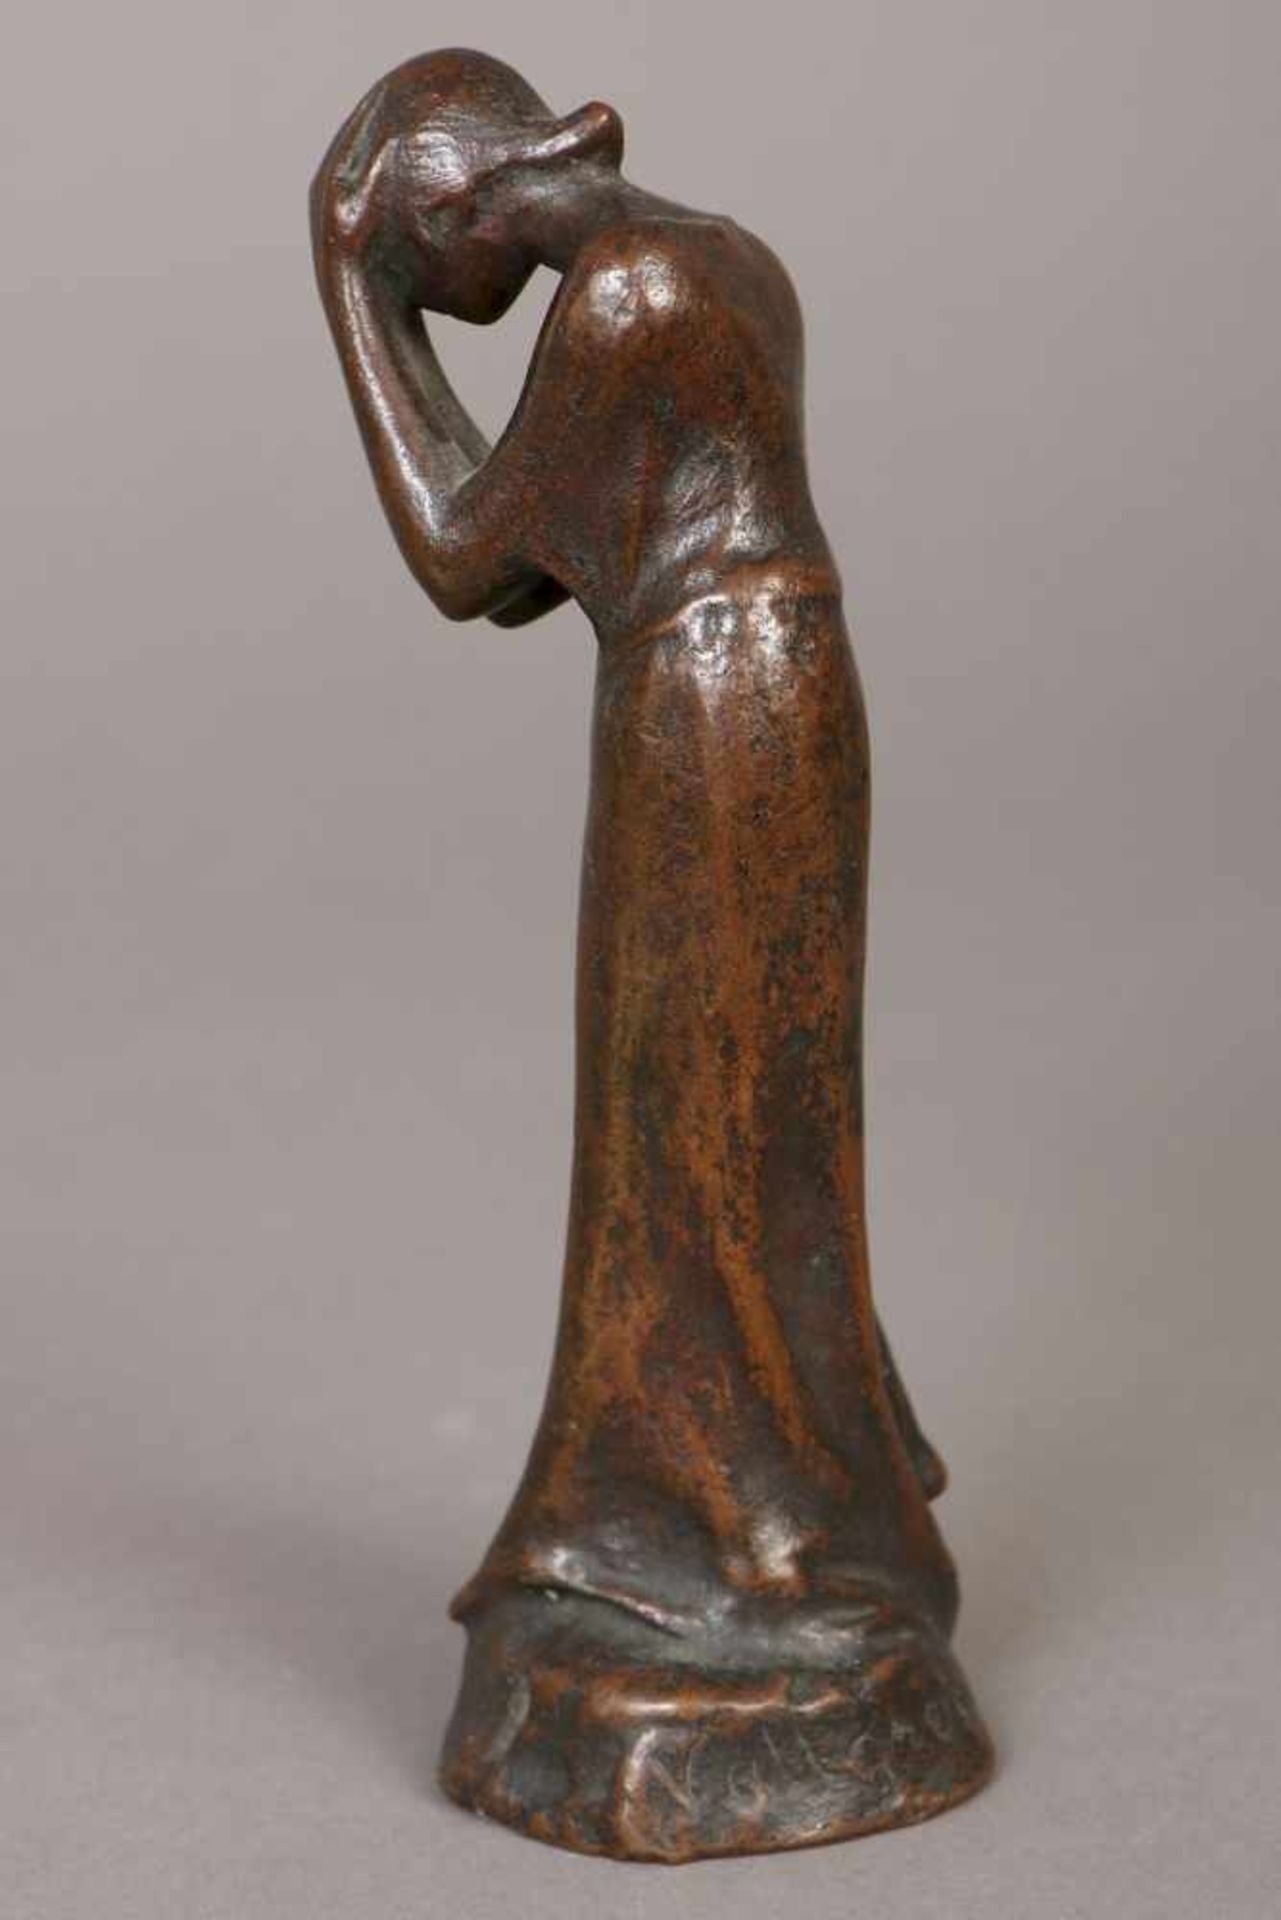 VILLE VALLGREN (1855-1940) Bronzefigur ¨Trauernde¨stehende, weibliche Figur, die Hände über den Kopf - Bild 2 aus 3